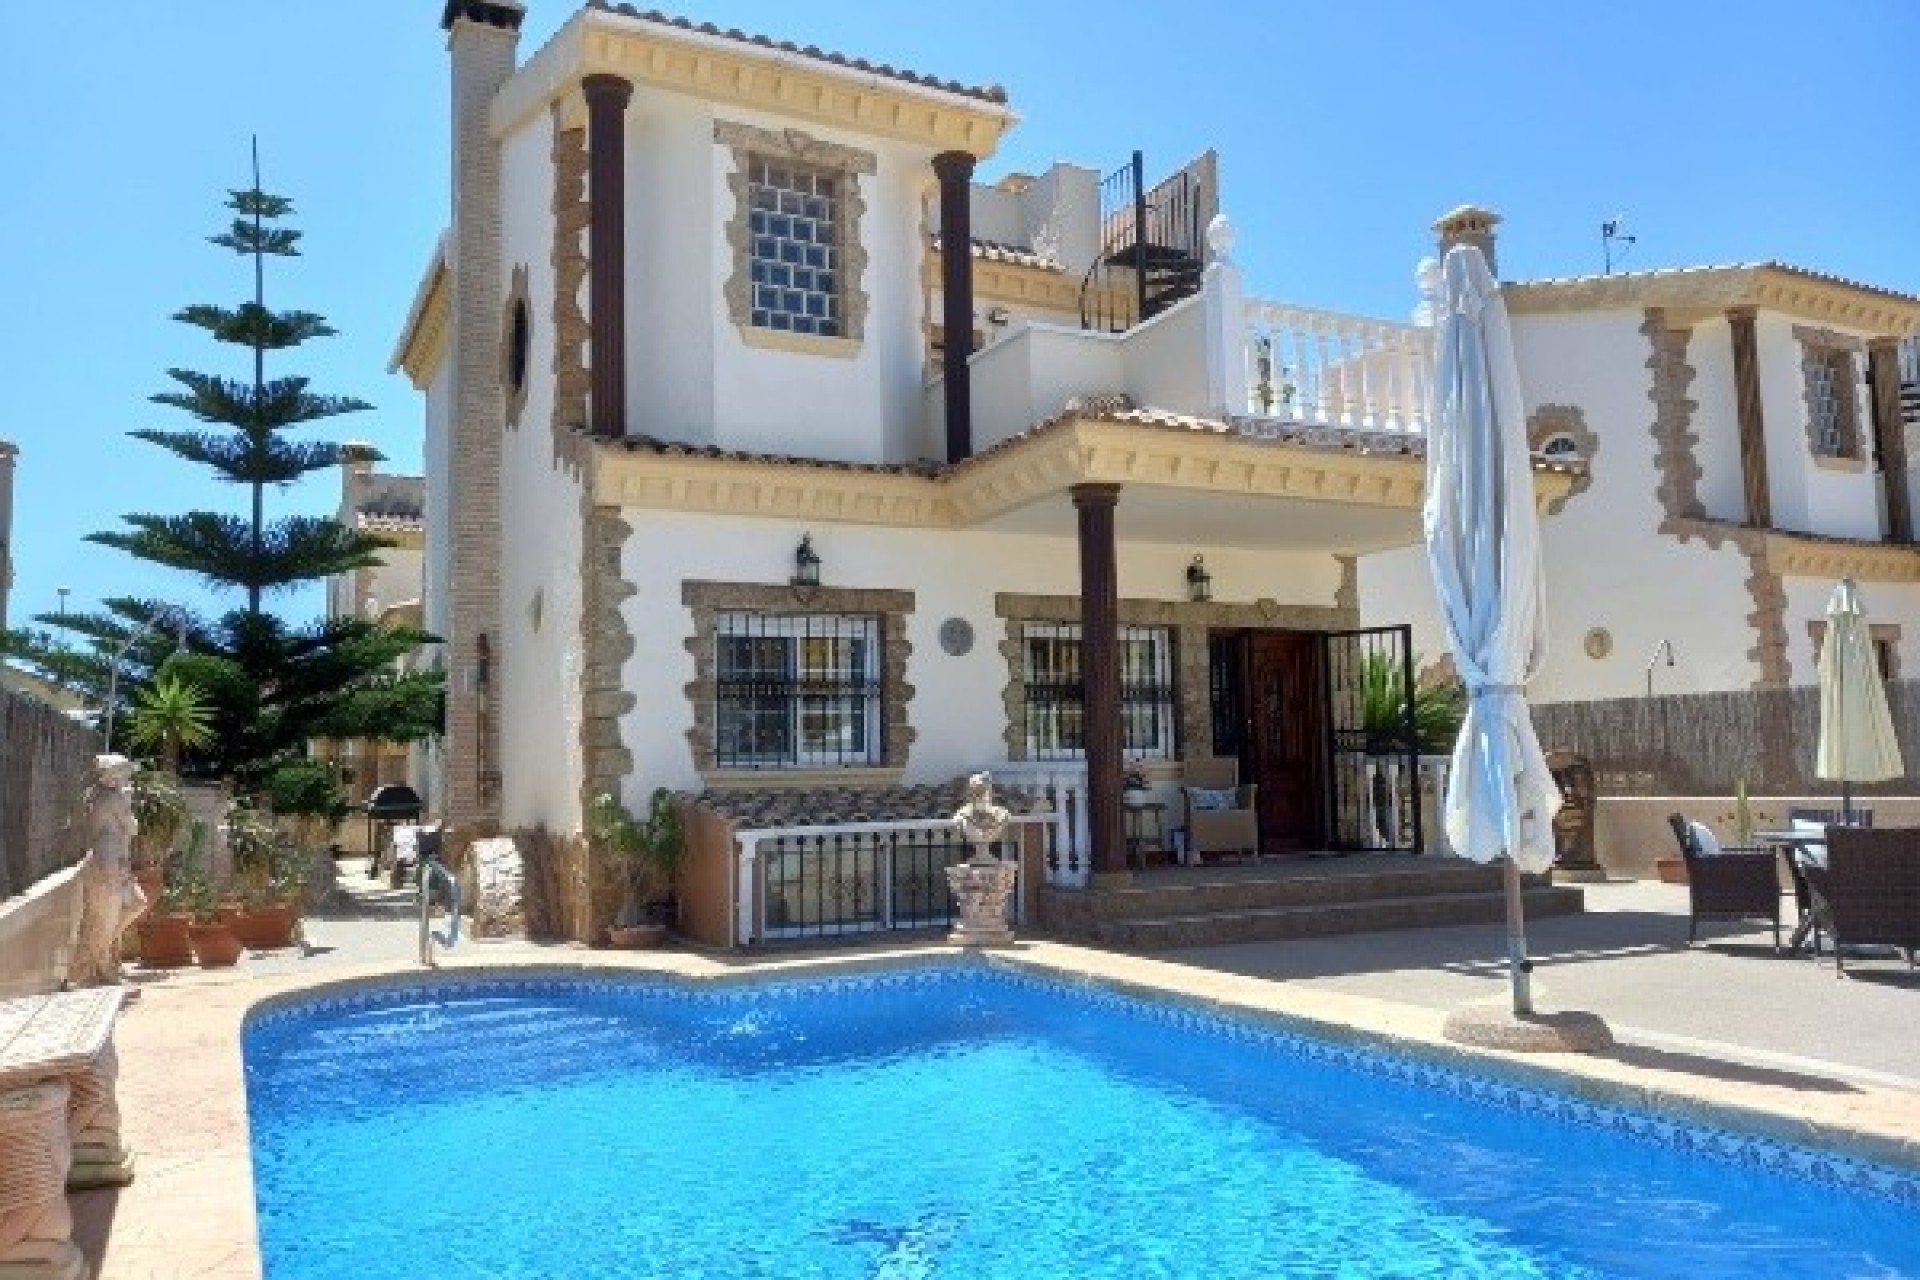 For sale: 4 bedroom house / villa in El Raso, Costa Blanca